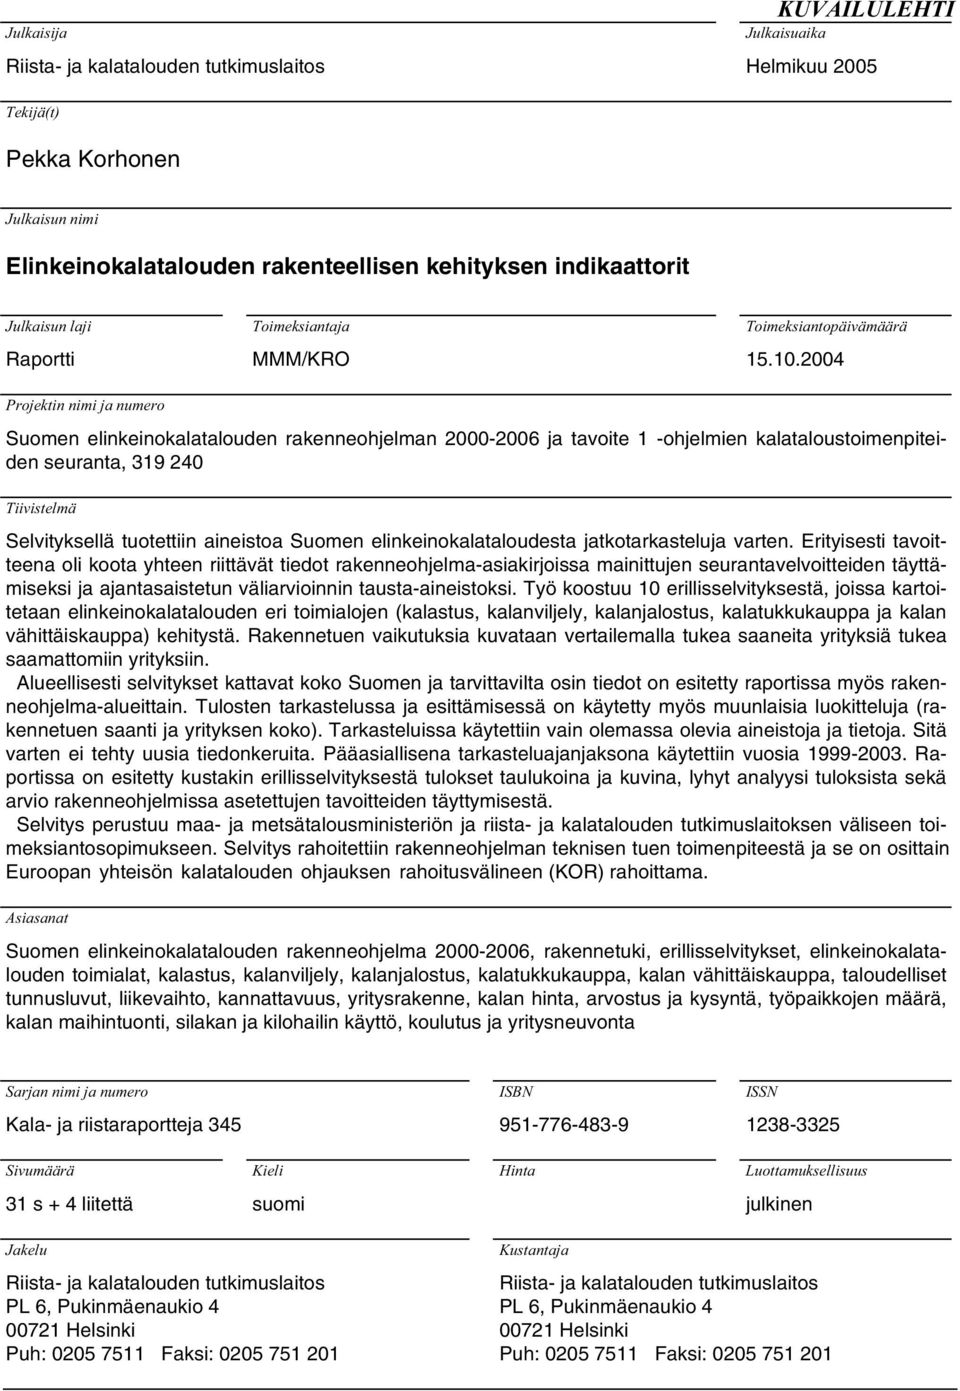 2004 Projektin nimi ja numero Suomen elinkeinokalatalouden rakenneohjelman -2006 ja tavoite 1 -ohjelmien kalataloustoimenpiteiden seuranta, 319 240 Tiivistelmä Selvityksellä tuotettiin aineistoa